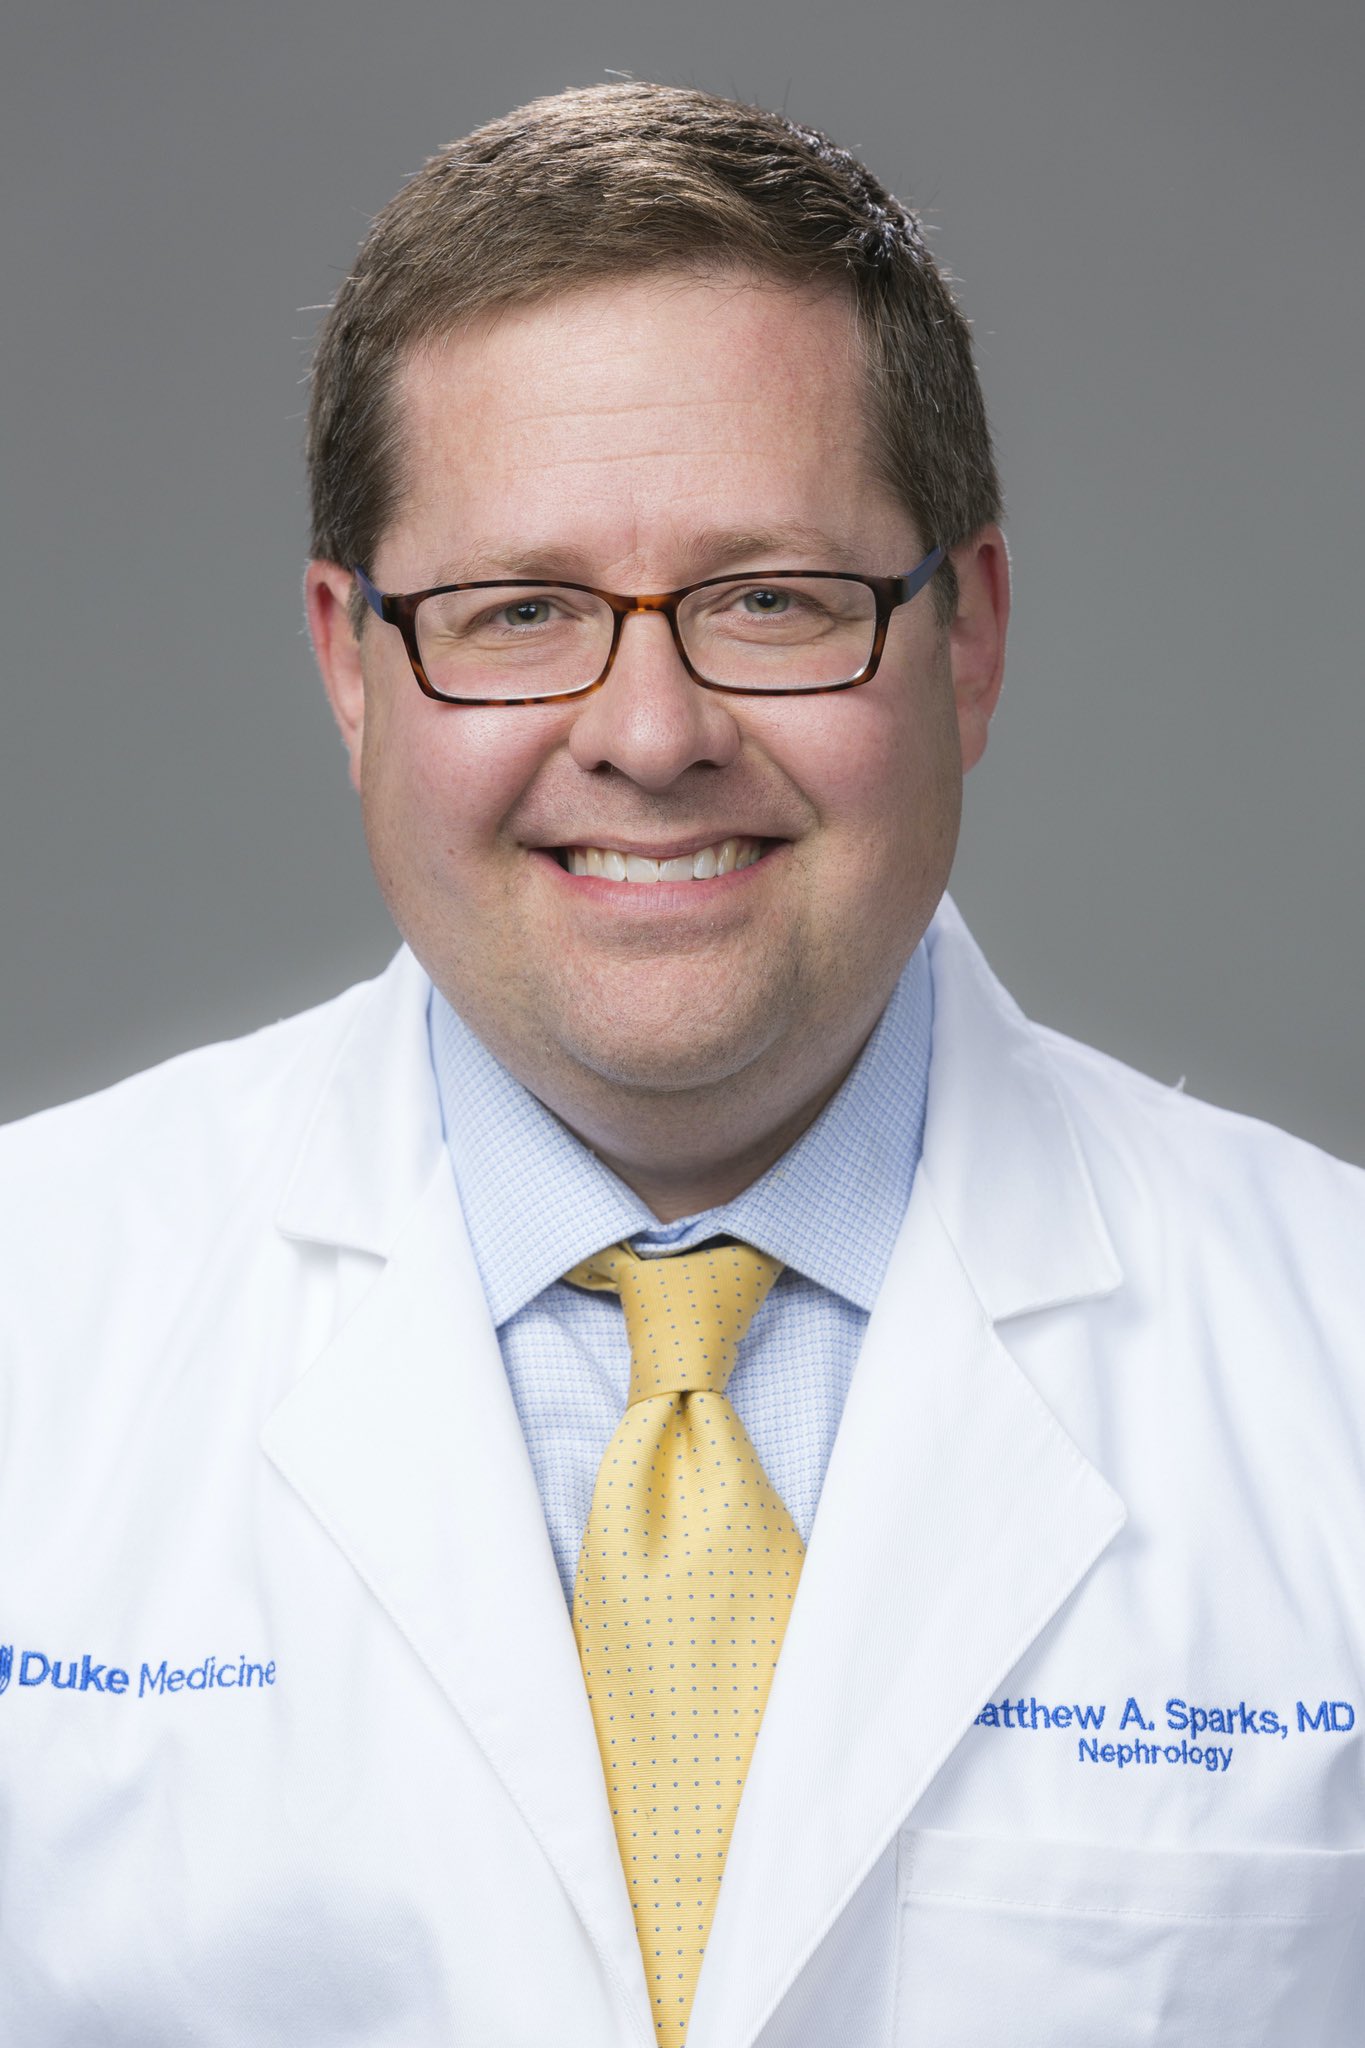 Matthew Sparks, MD, Duke nephrologist